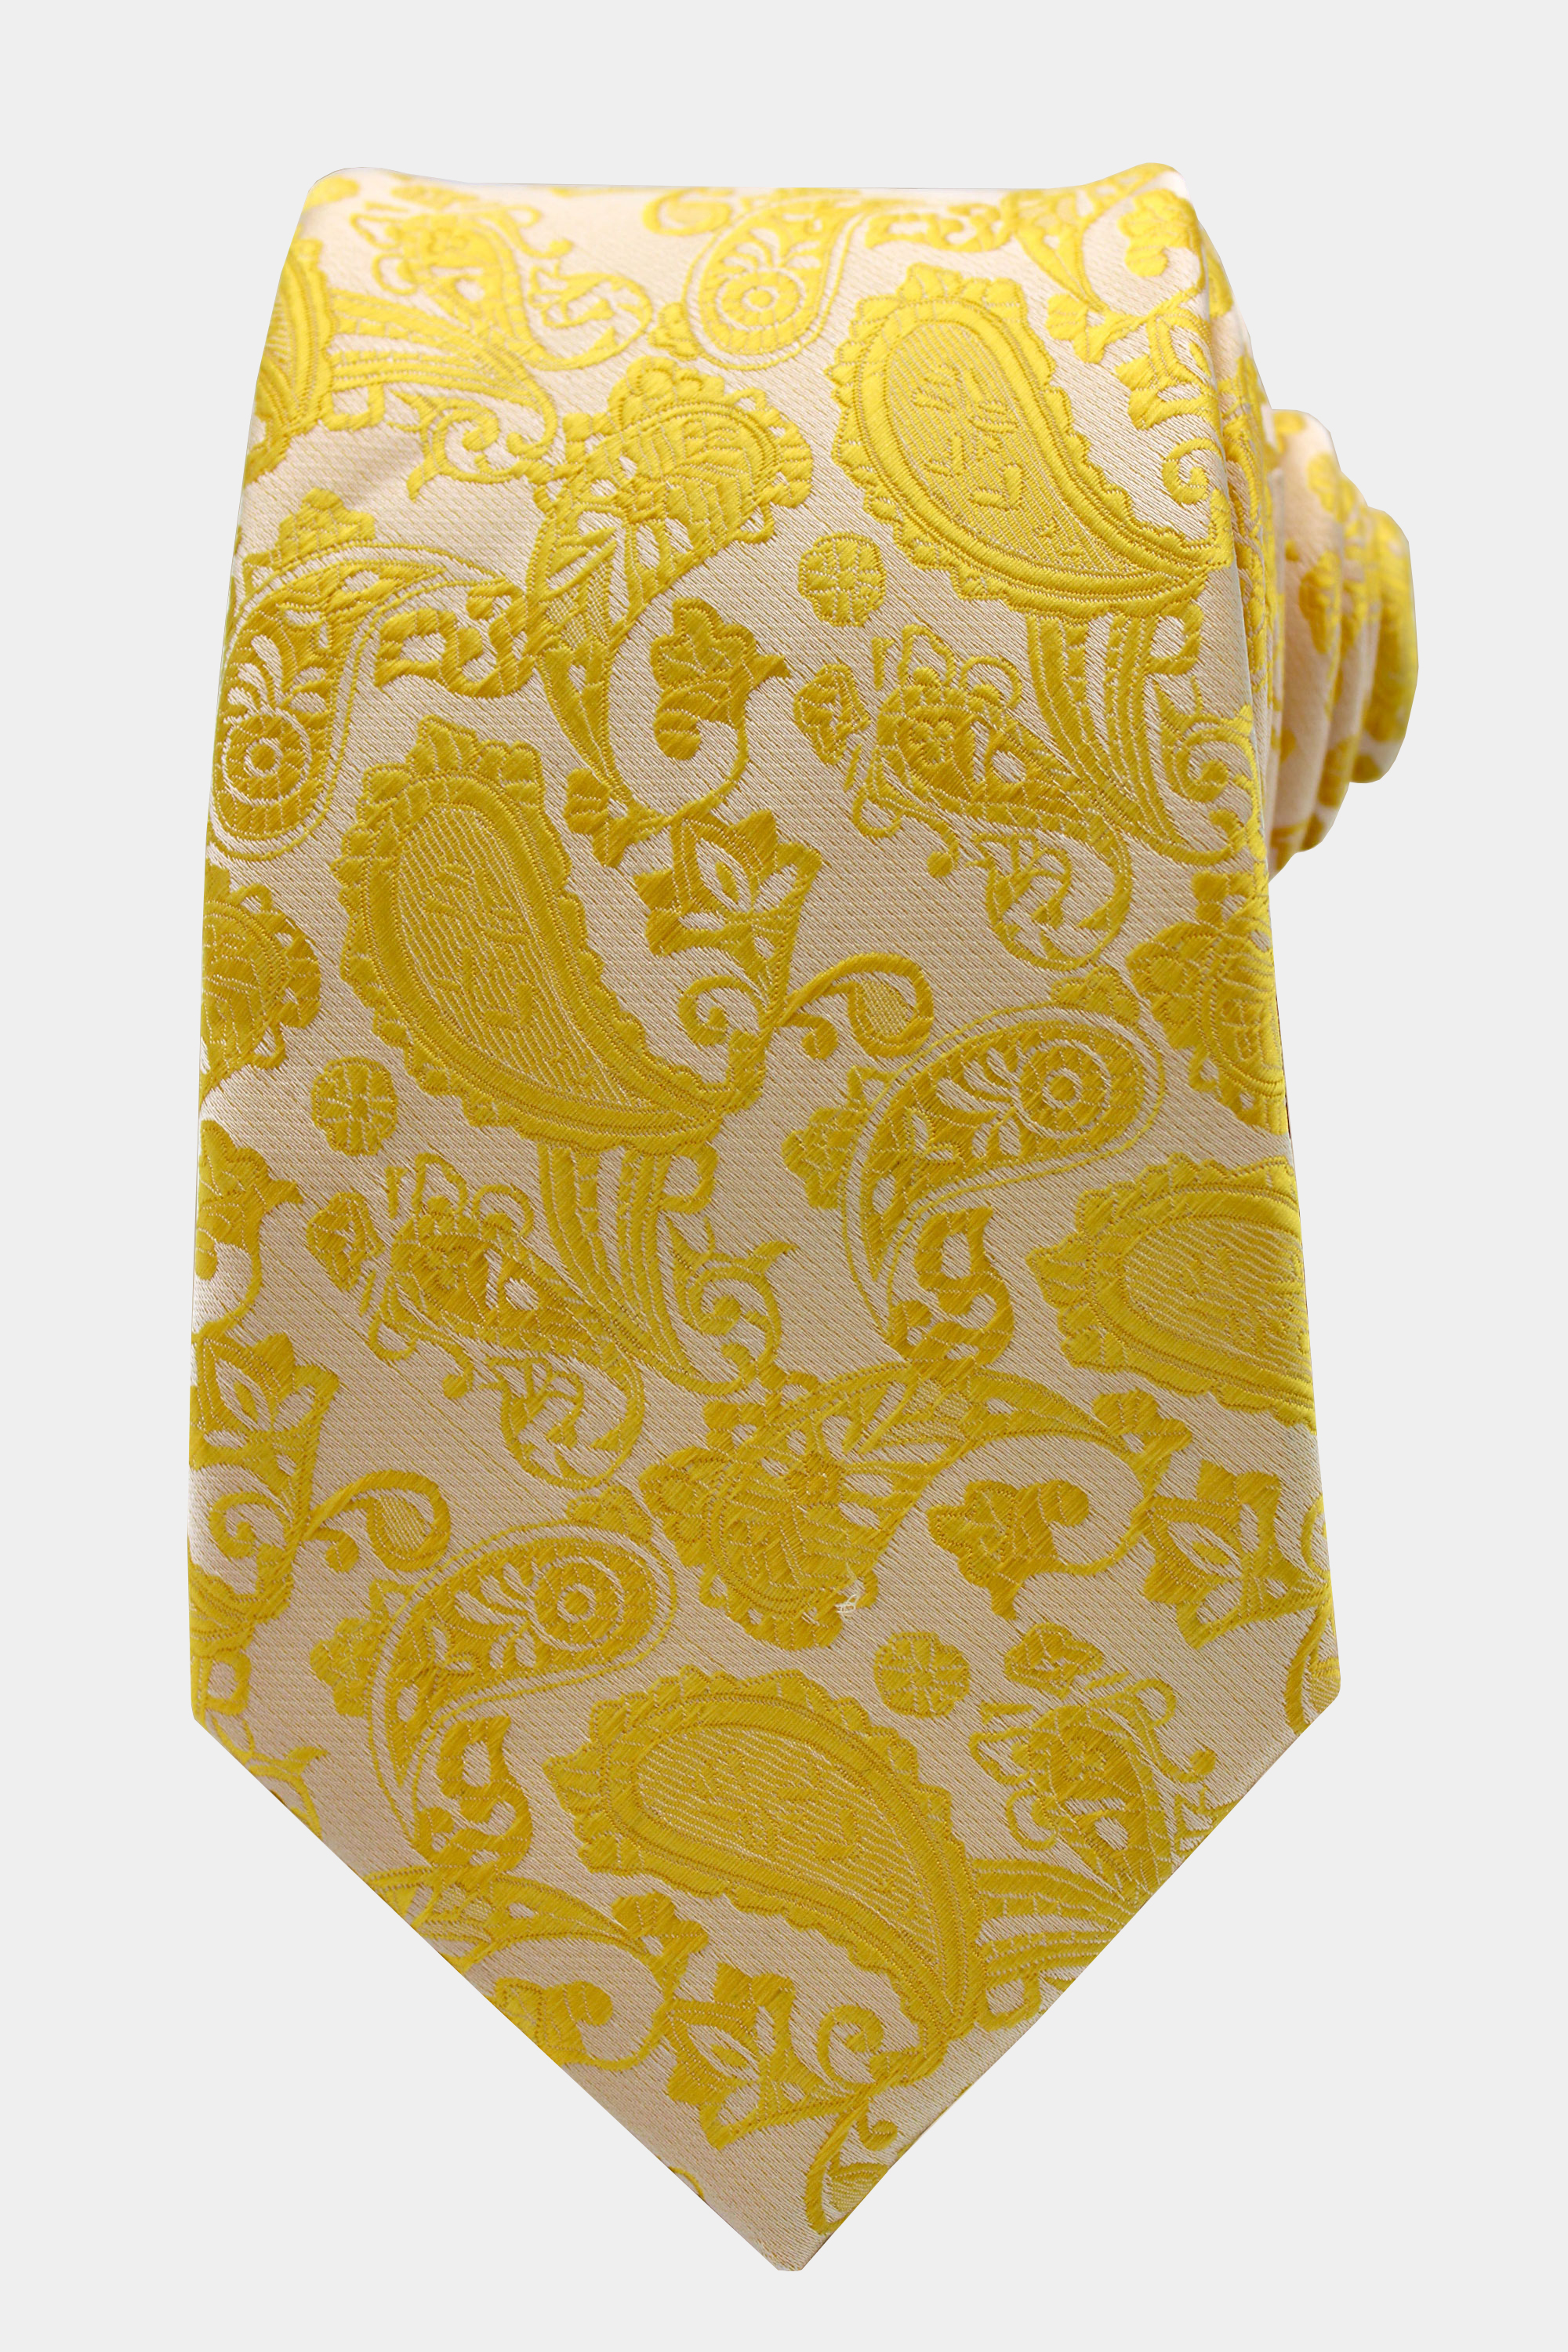 Gold-Paisley-Tie-from-Gentlemansguru.com_